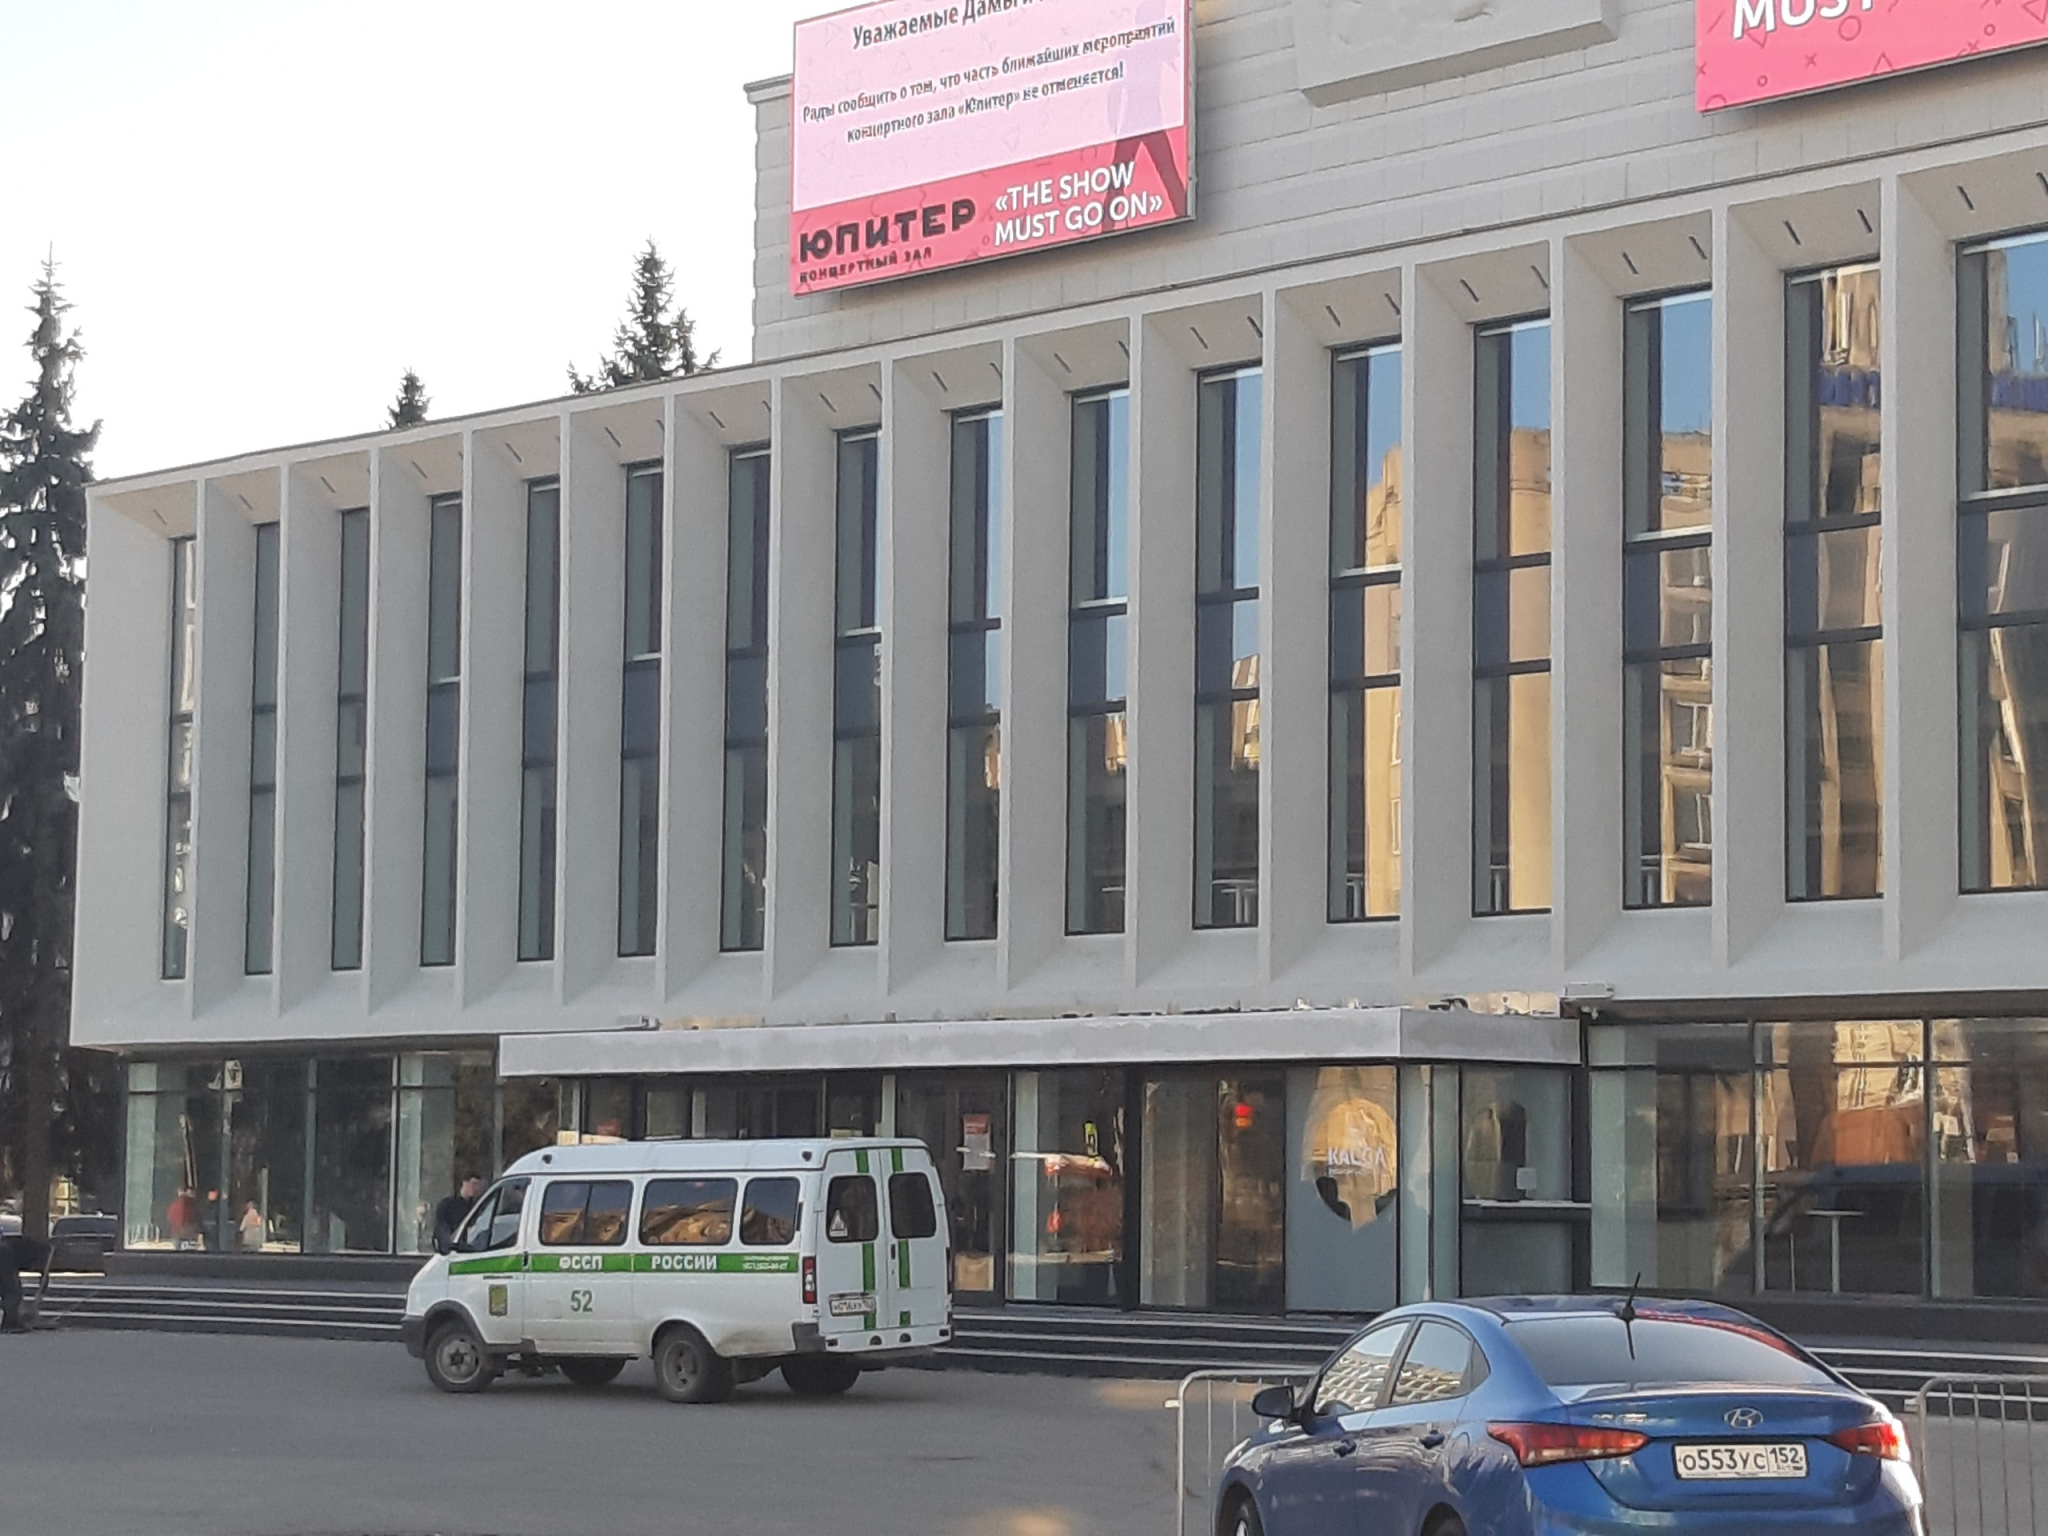 Прощай, «Аська»: у концертного зала «Юпитер» в Нижнем Новгороде снесли фонтан